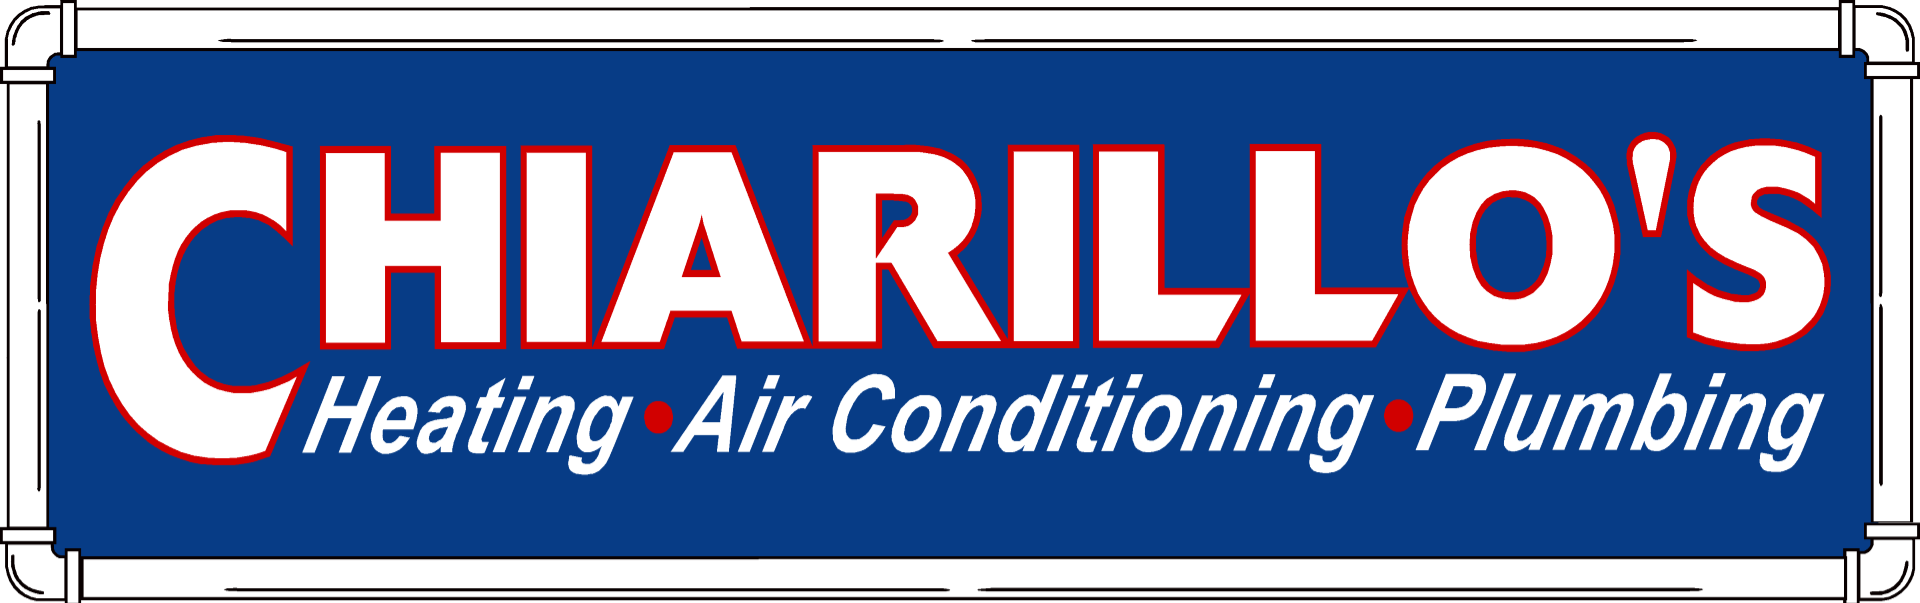 Chiarillo's HVAC & Plumbing LLC Logo